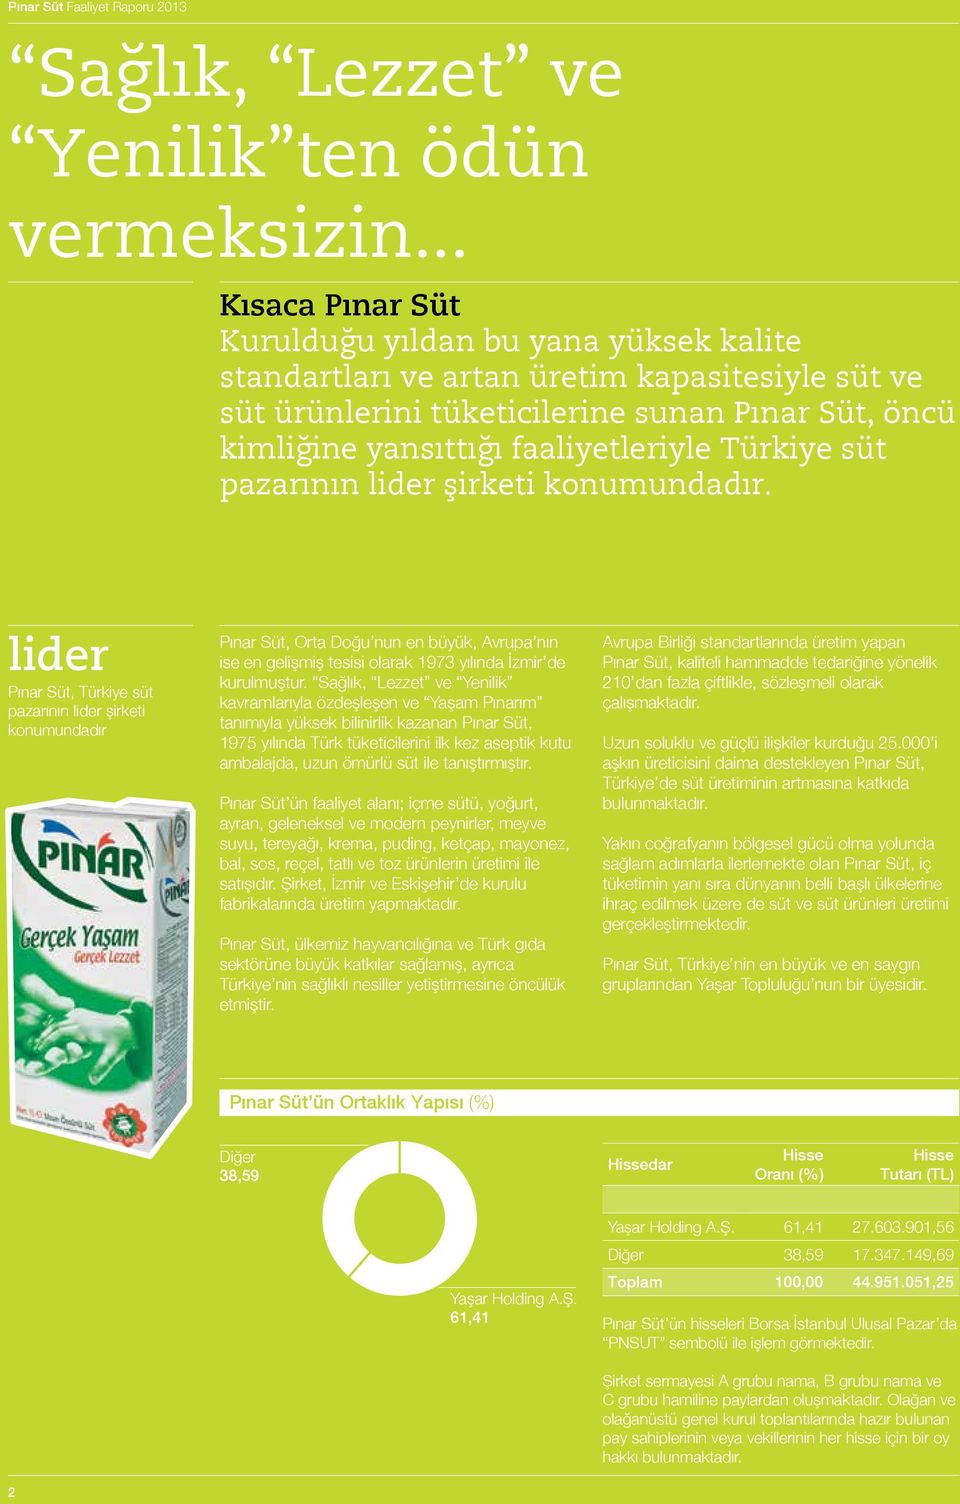 Türkiye süt pazarının lider şirketi konumundadır.